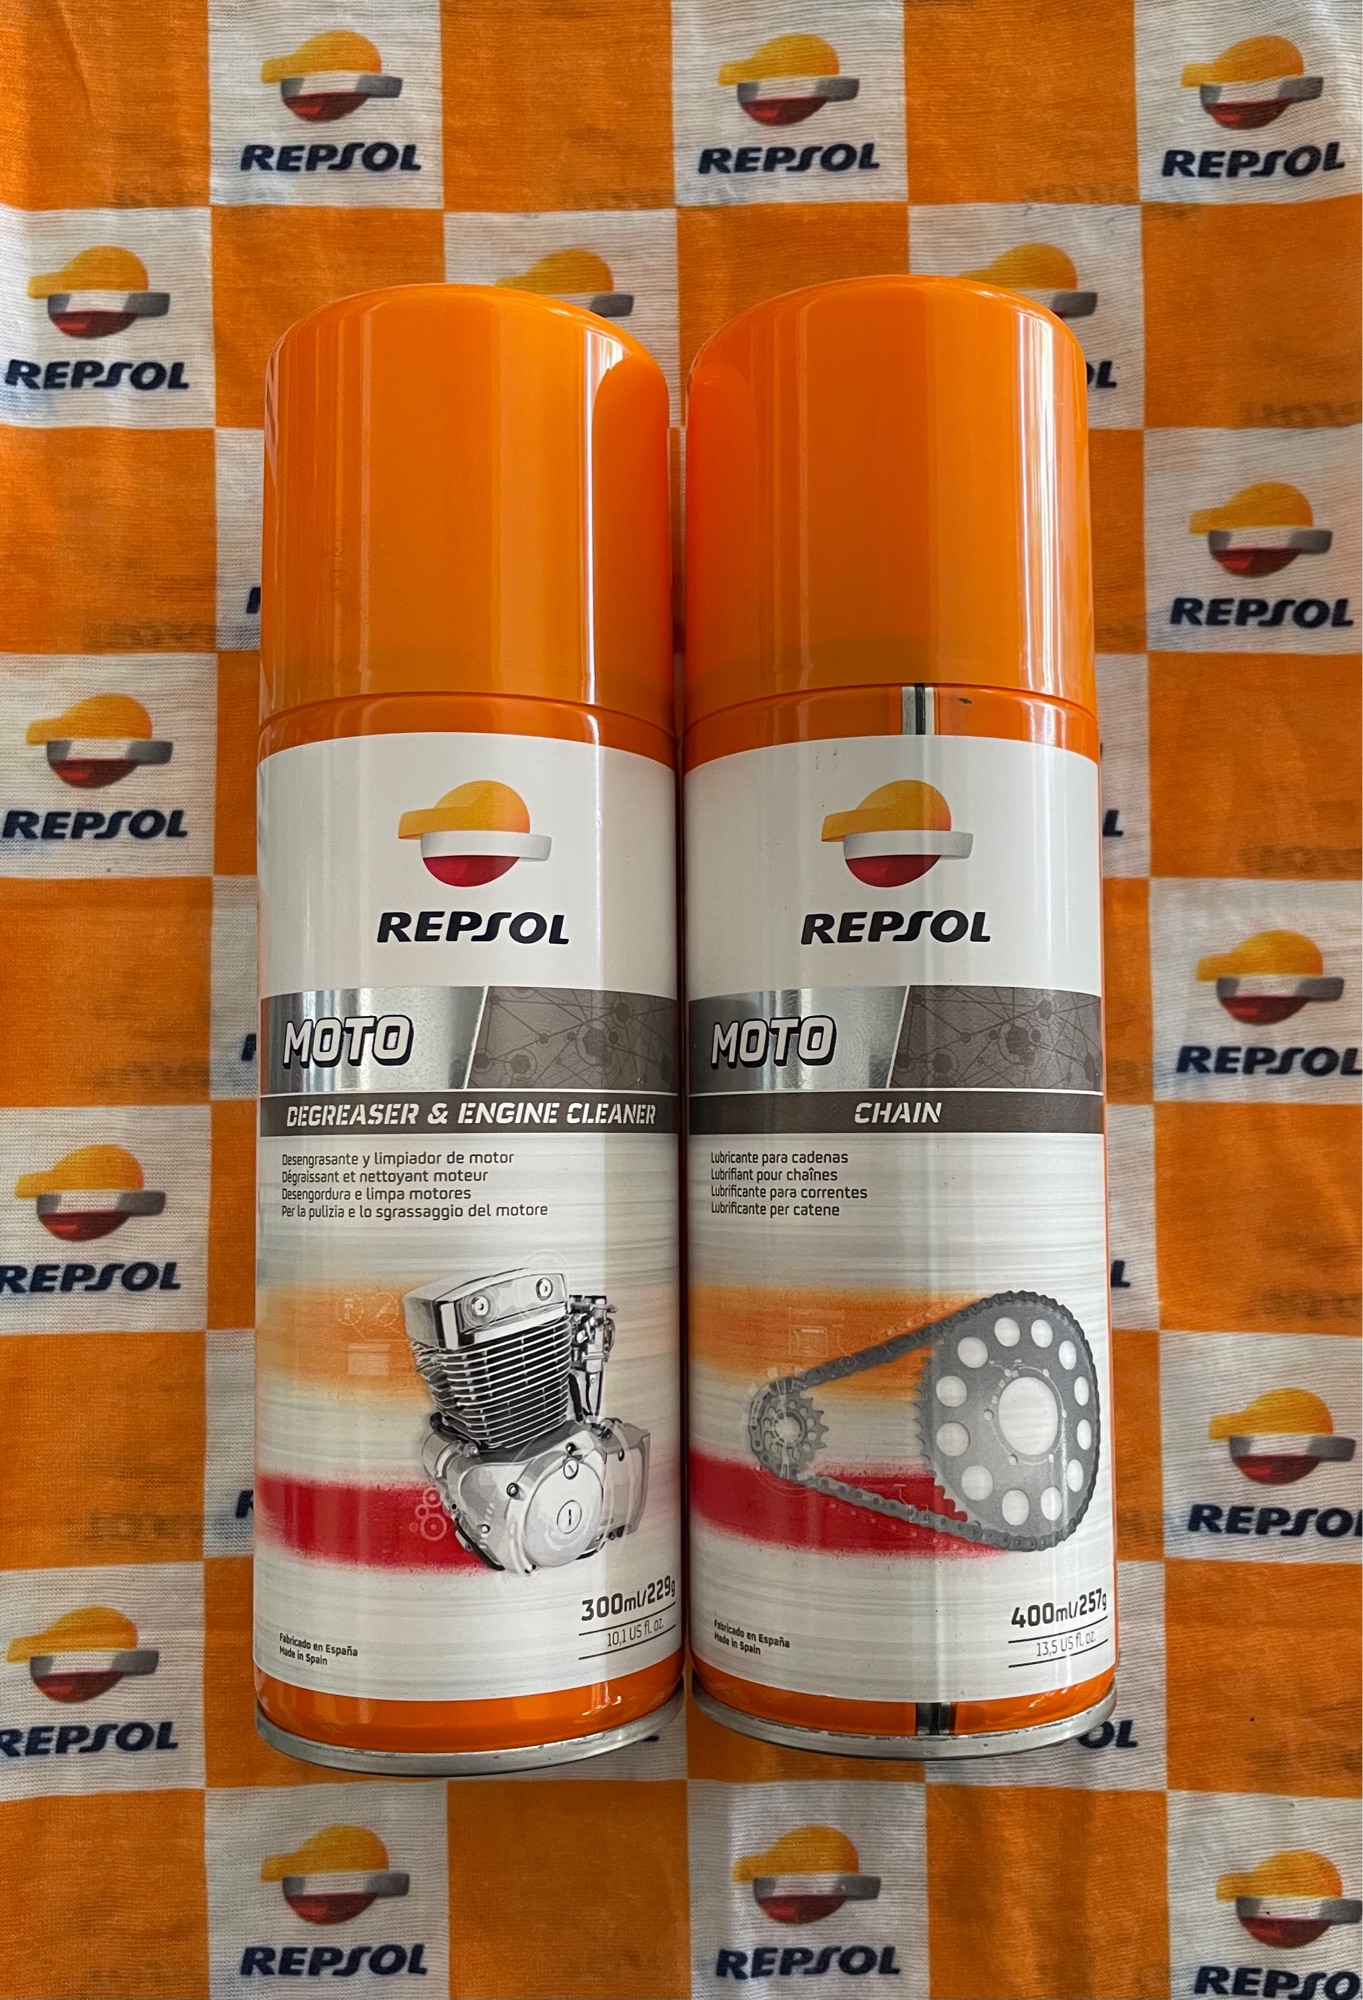 แพ็คเกจคู่ Repsol MOTO CHAIN & Repsol Degreaser & Engine Cleaner REPSOL สเปรย์ ทำความสะอาด เครื่องยนต์ คราบน้ำมัน โซ่ และ สเปรย์หล่อลื่นโซ่ แบบแว๊กซ์(ไม่ใช้จาระบีขาว)MOTO CHAIN ปริมาตร 400ml